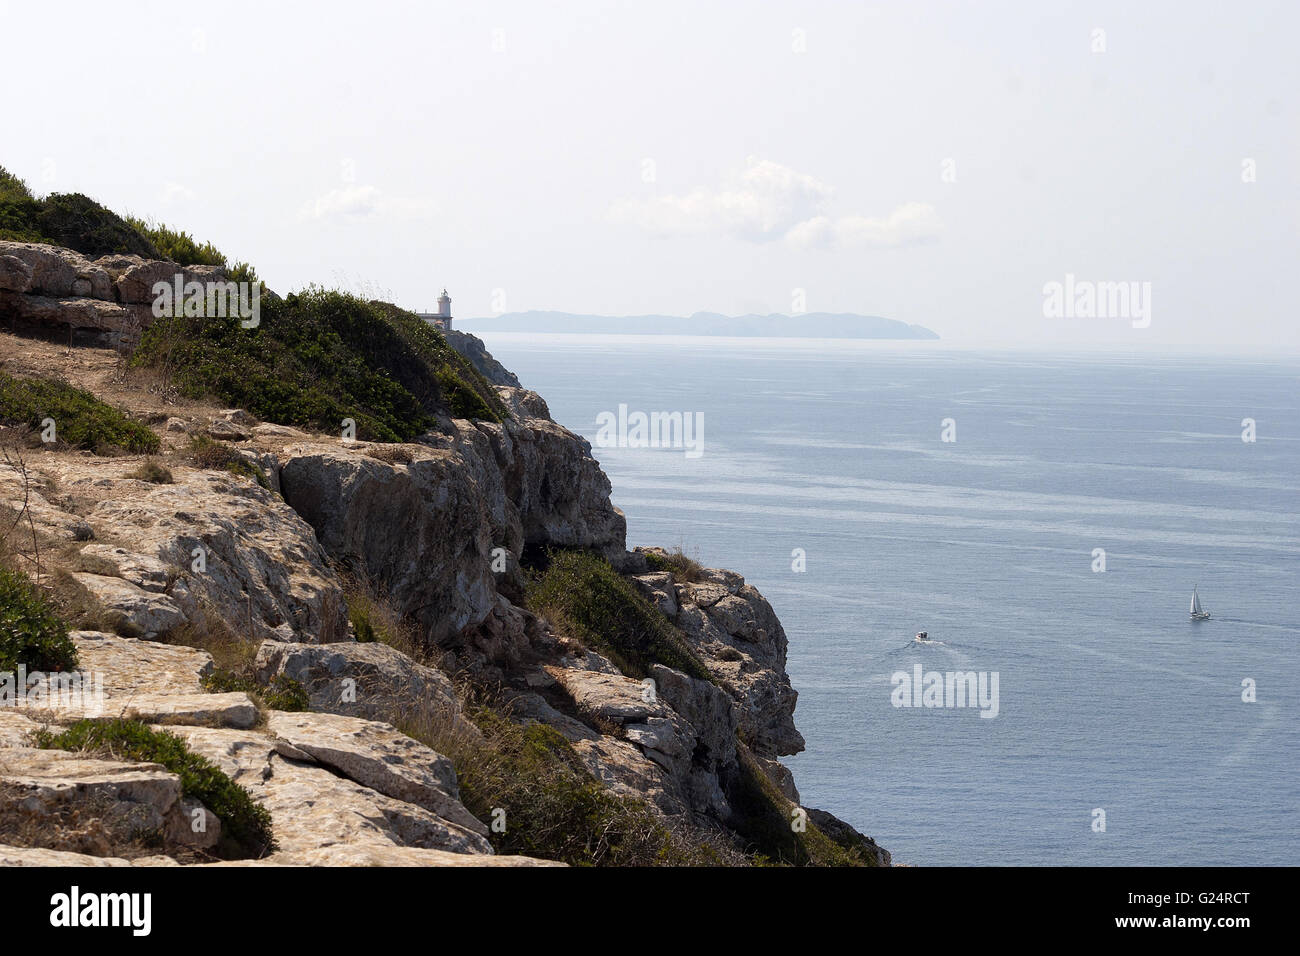 Une belle falaise avec la vue sur la mer, Palma de Majorque, Palma de Maiorca, littoral, mer, tourisme, voyages, vacances Banque D'Images